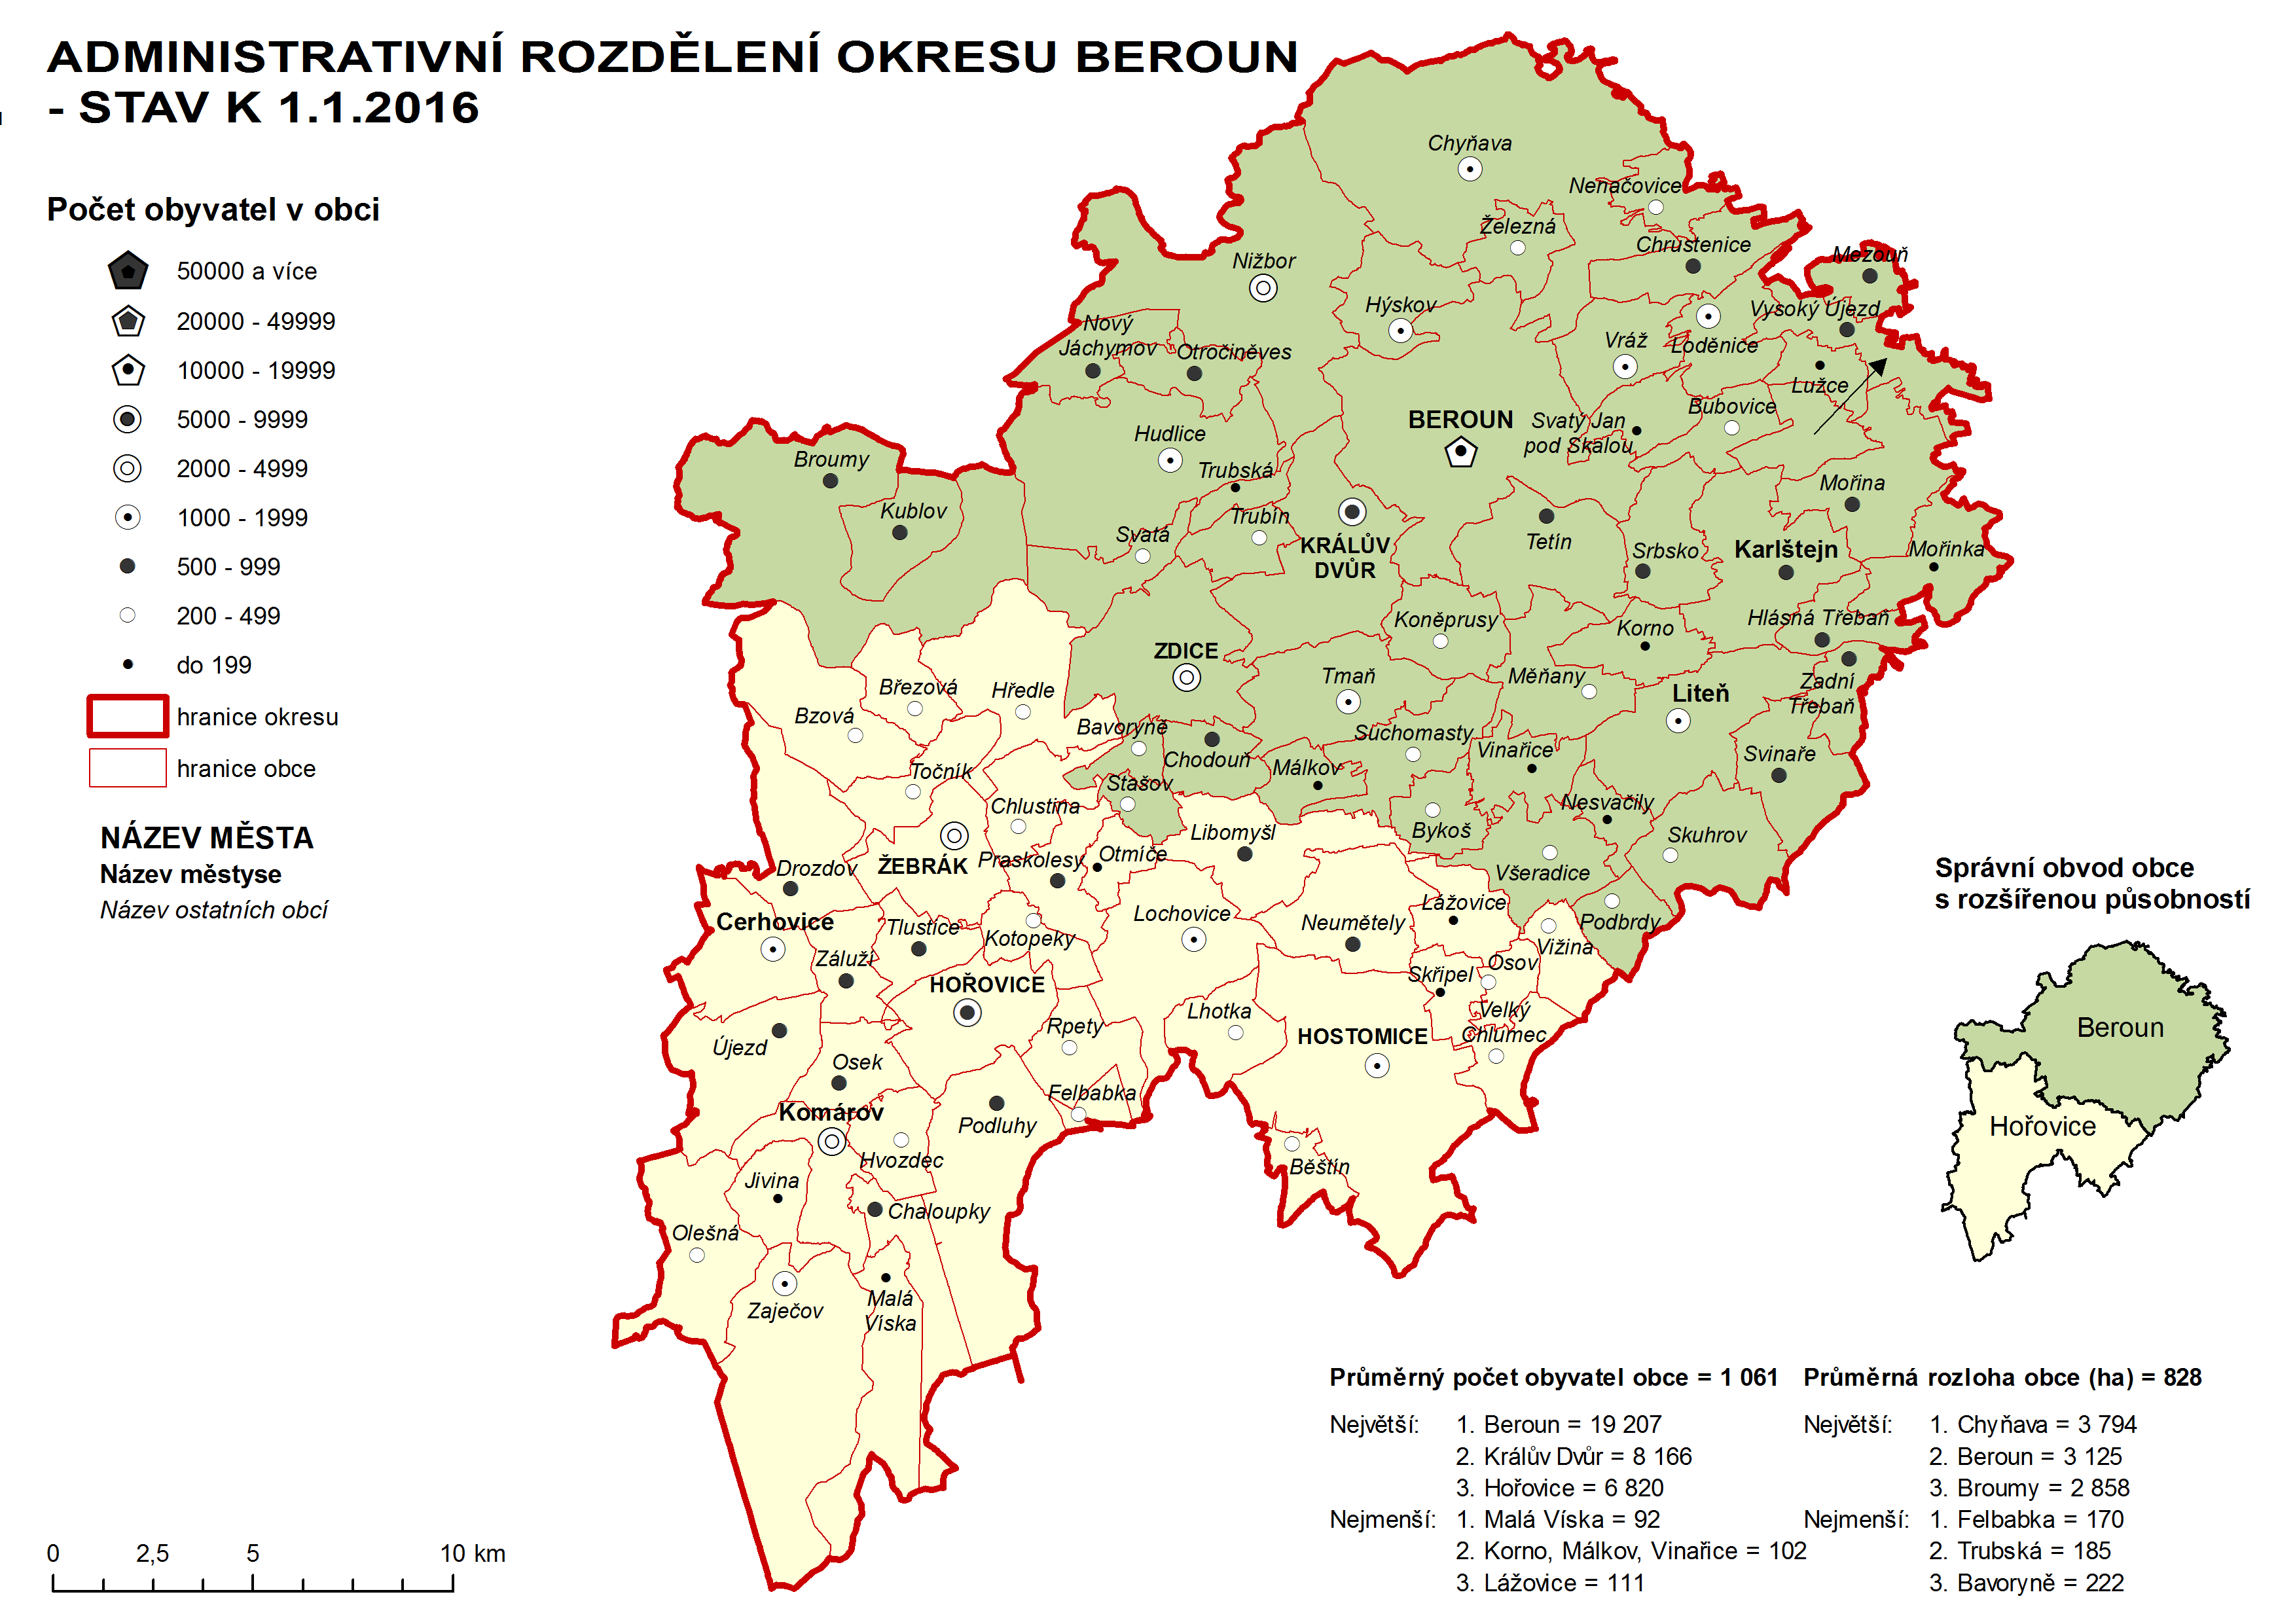 Administrativni rozdělení okresu Beroun - stav k 1.1.2016